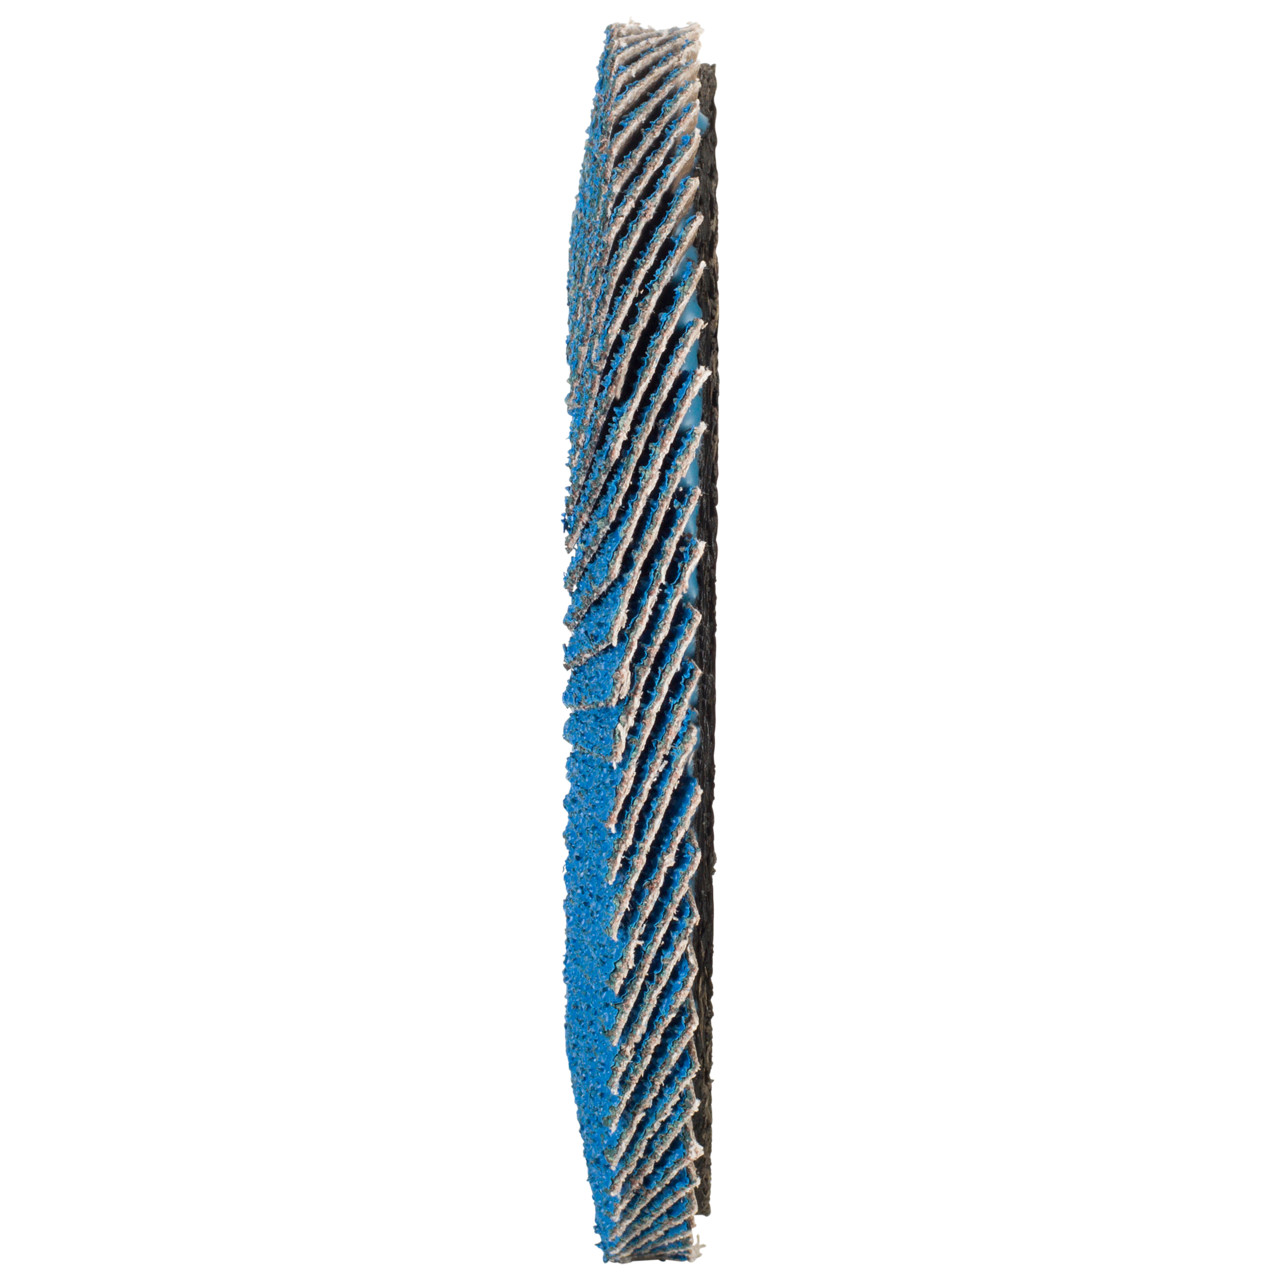 Tyrolit Gekartelde borgring DxH 115x22,2 FASTCUT voor staal en roestvrij staal, P40, vorm: 27A - offset uitvoering (glasvezeldrager uitvoering), Art. 160229